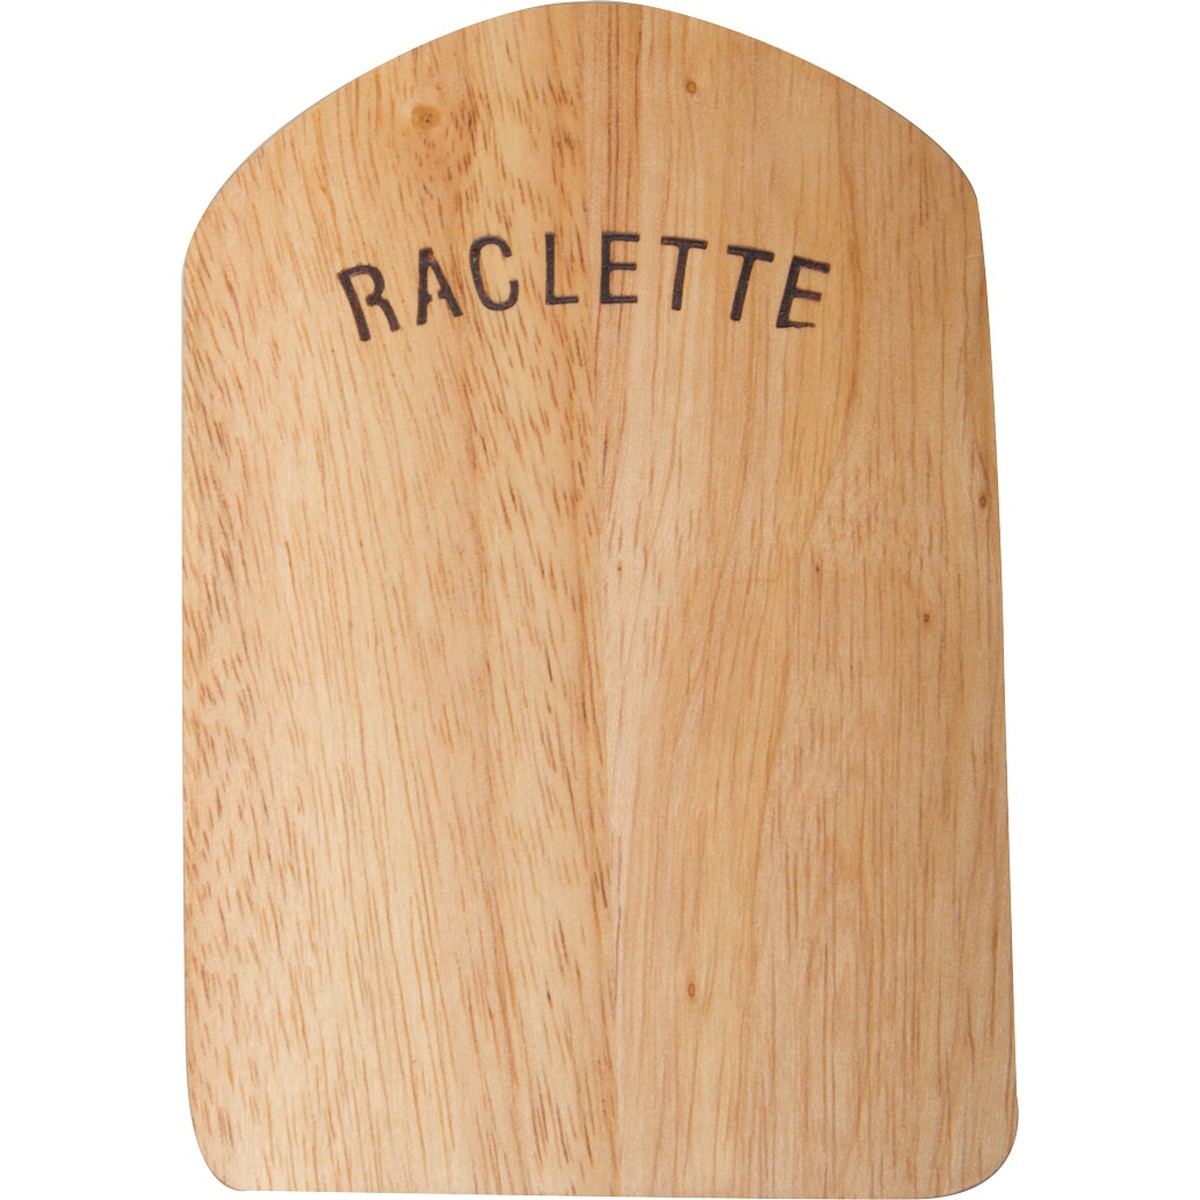 Fondue & raclette, Schilliger Sélection Support en bois pour